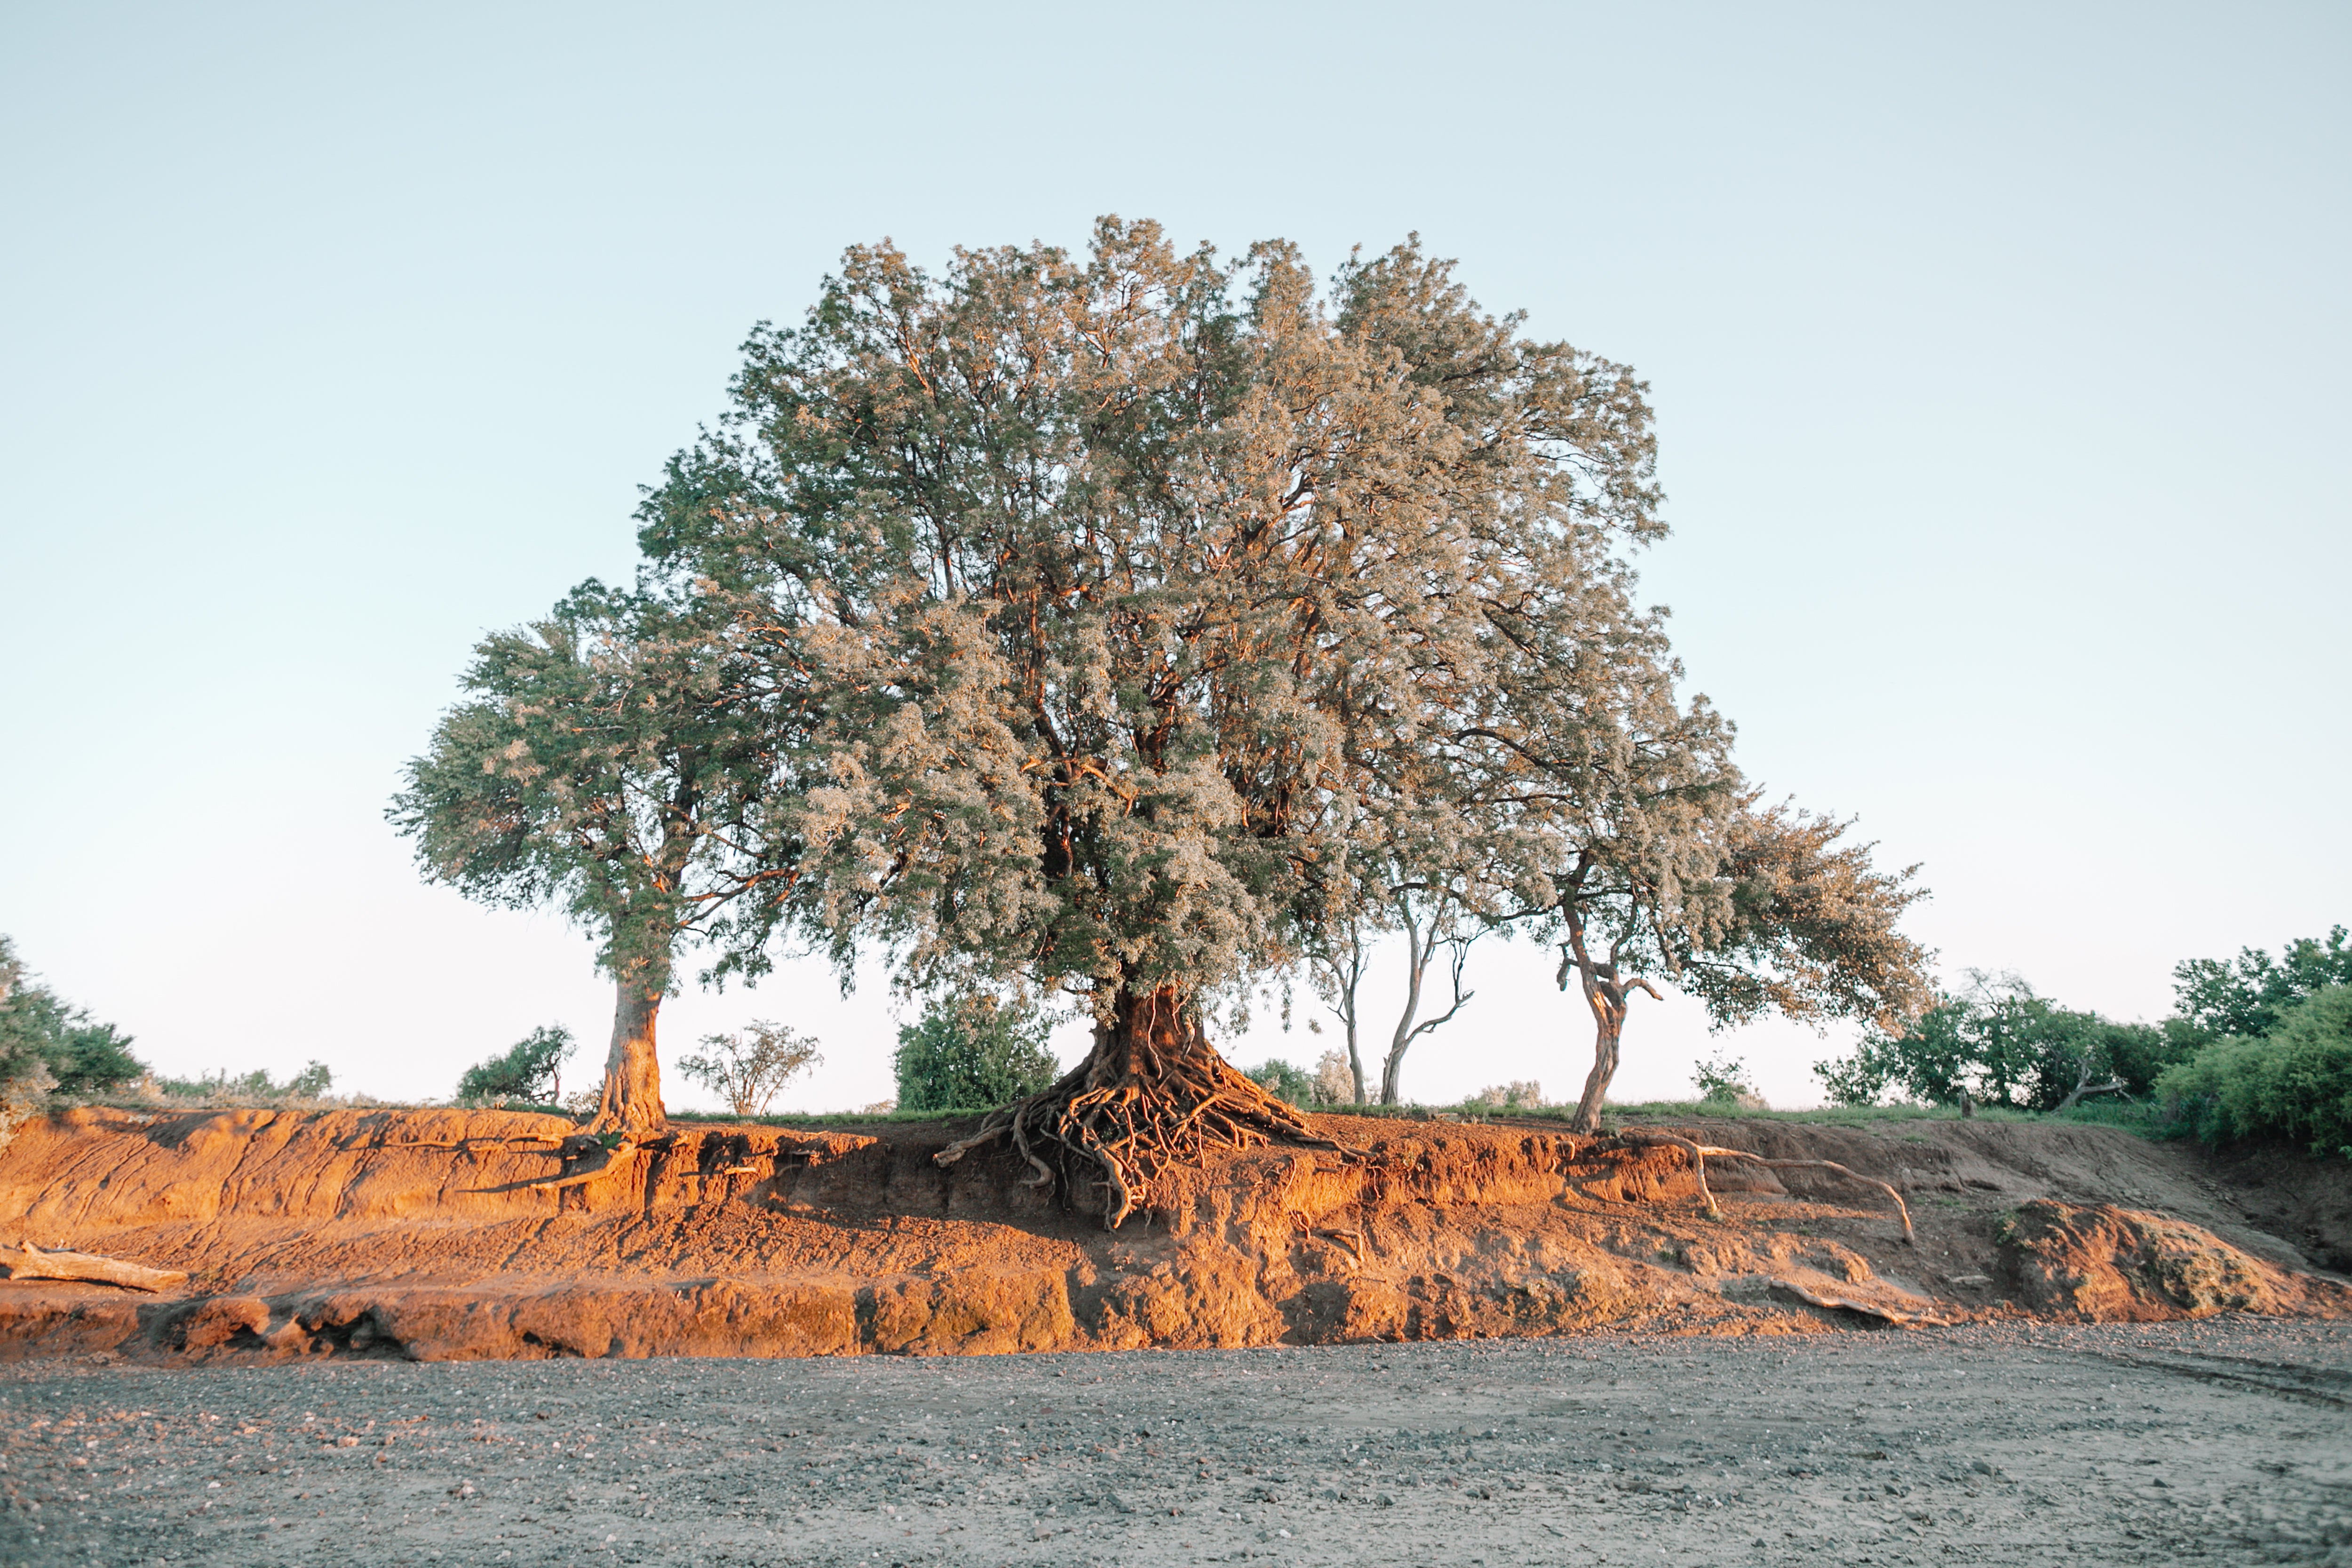 Machatu Tree